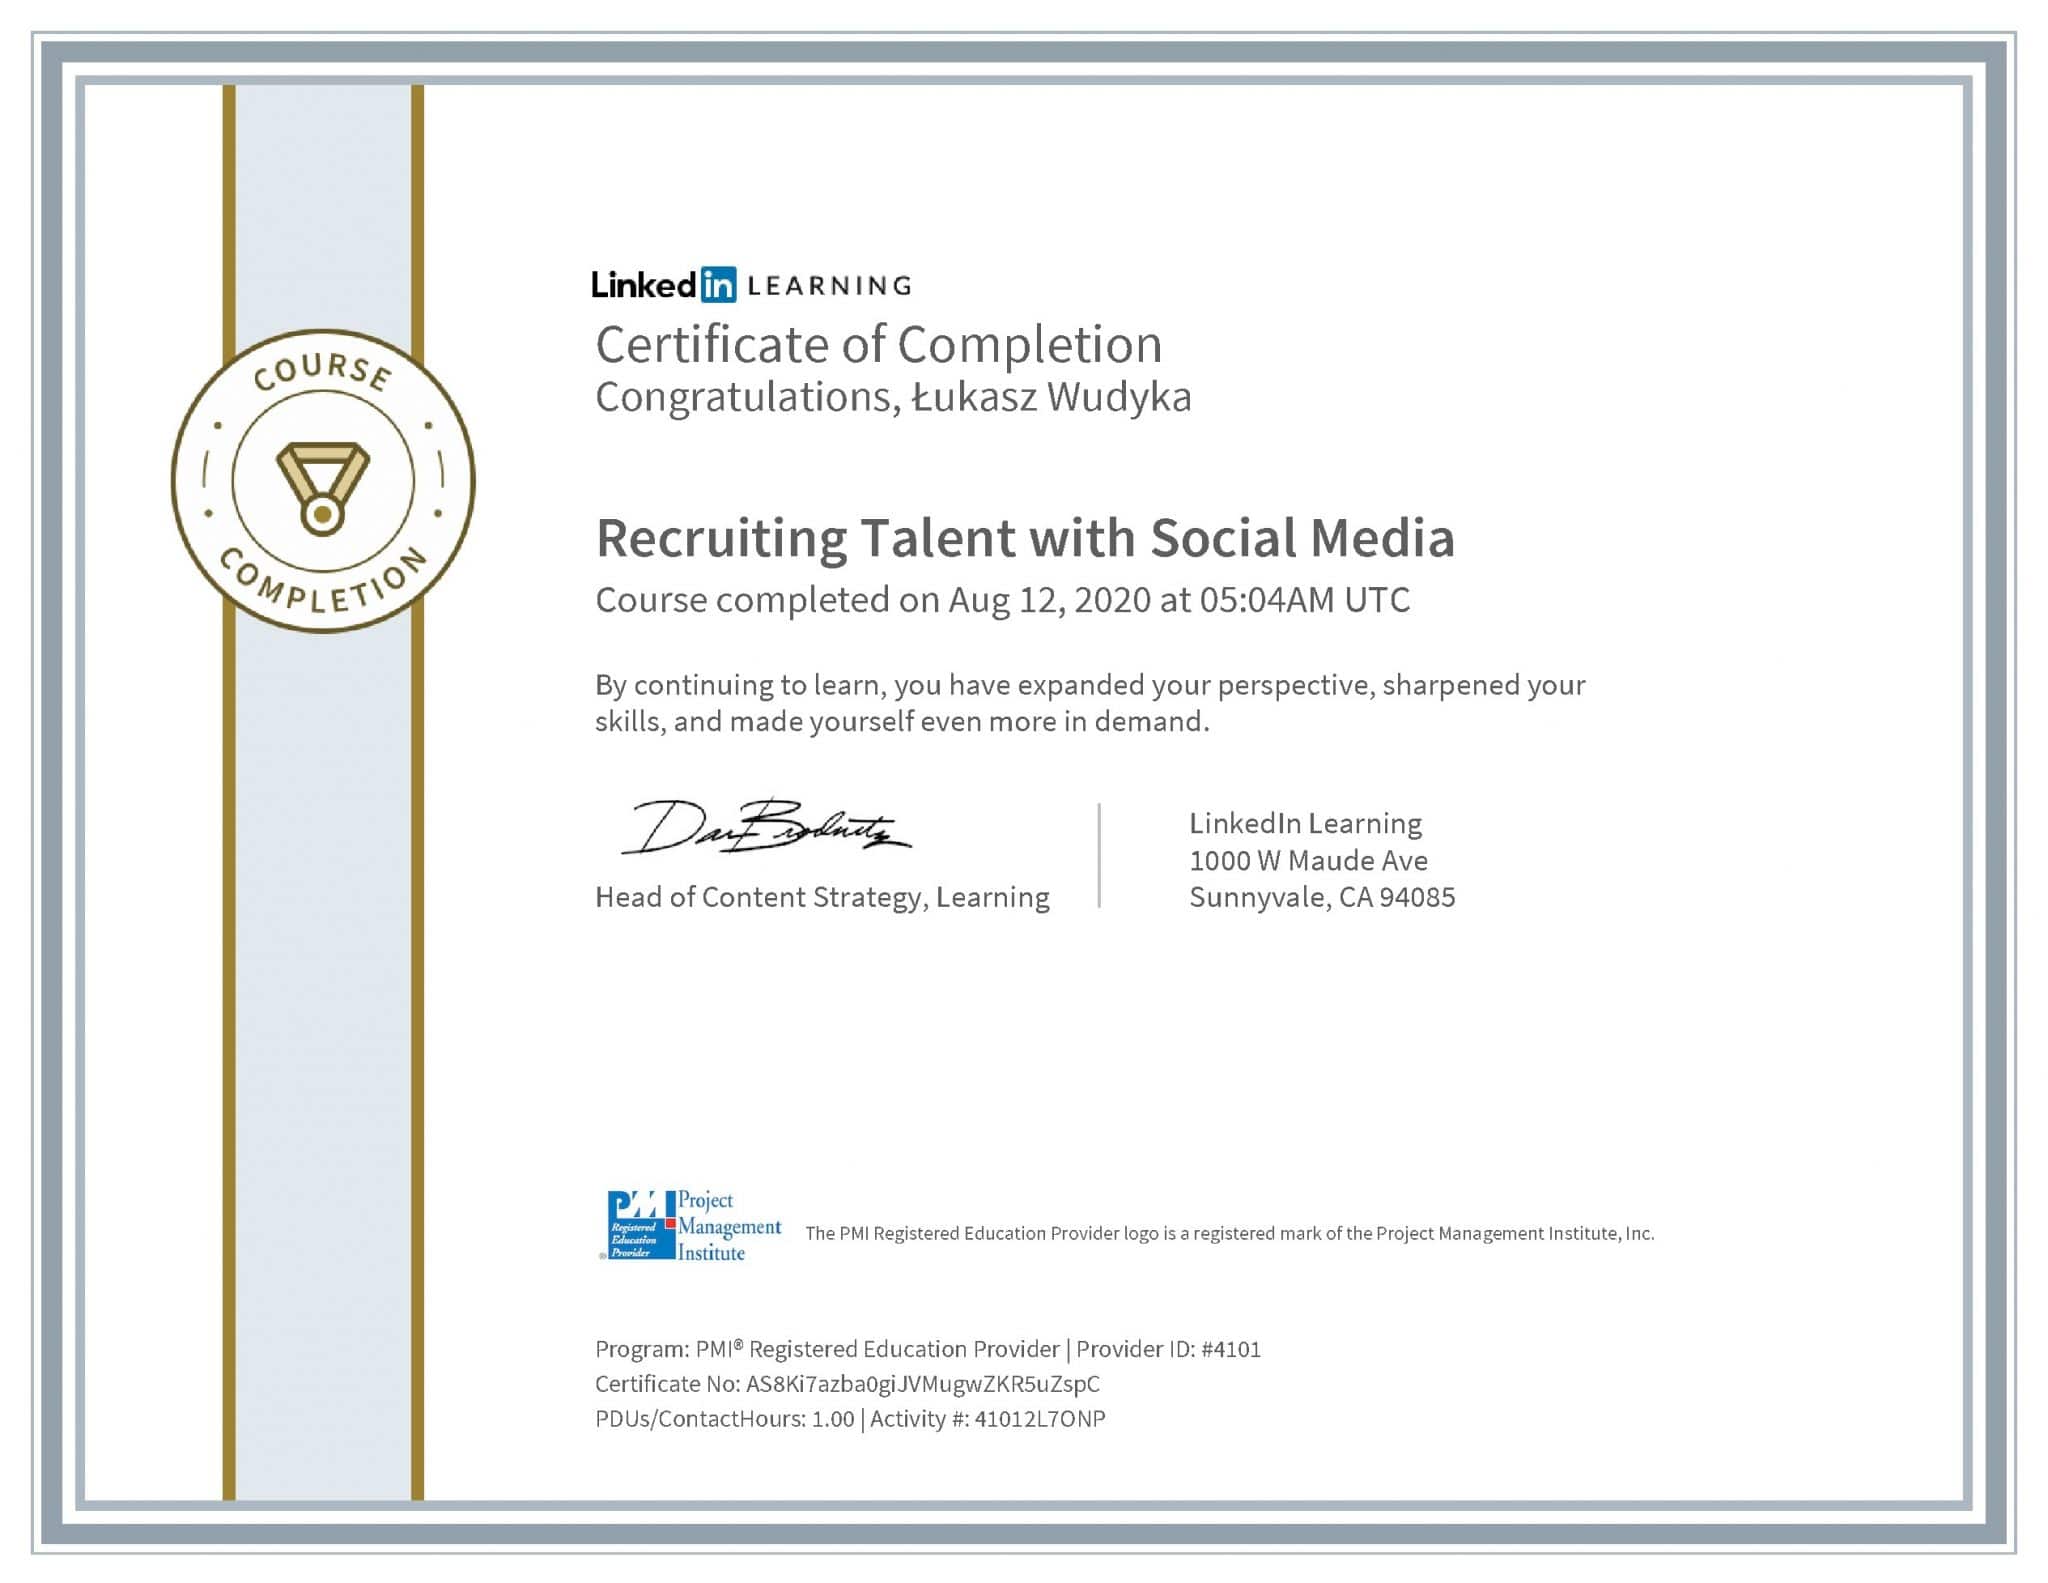 Łukasz Wudyka certyfikat LinkedIn Recruiting Talent with Social Media PMI